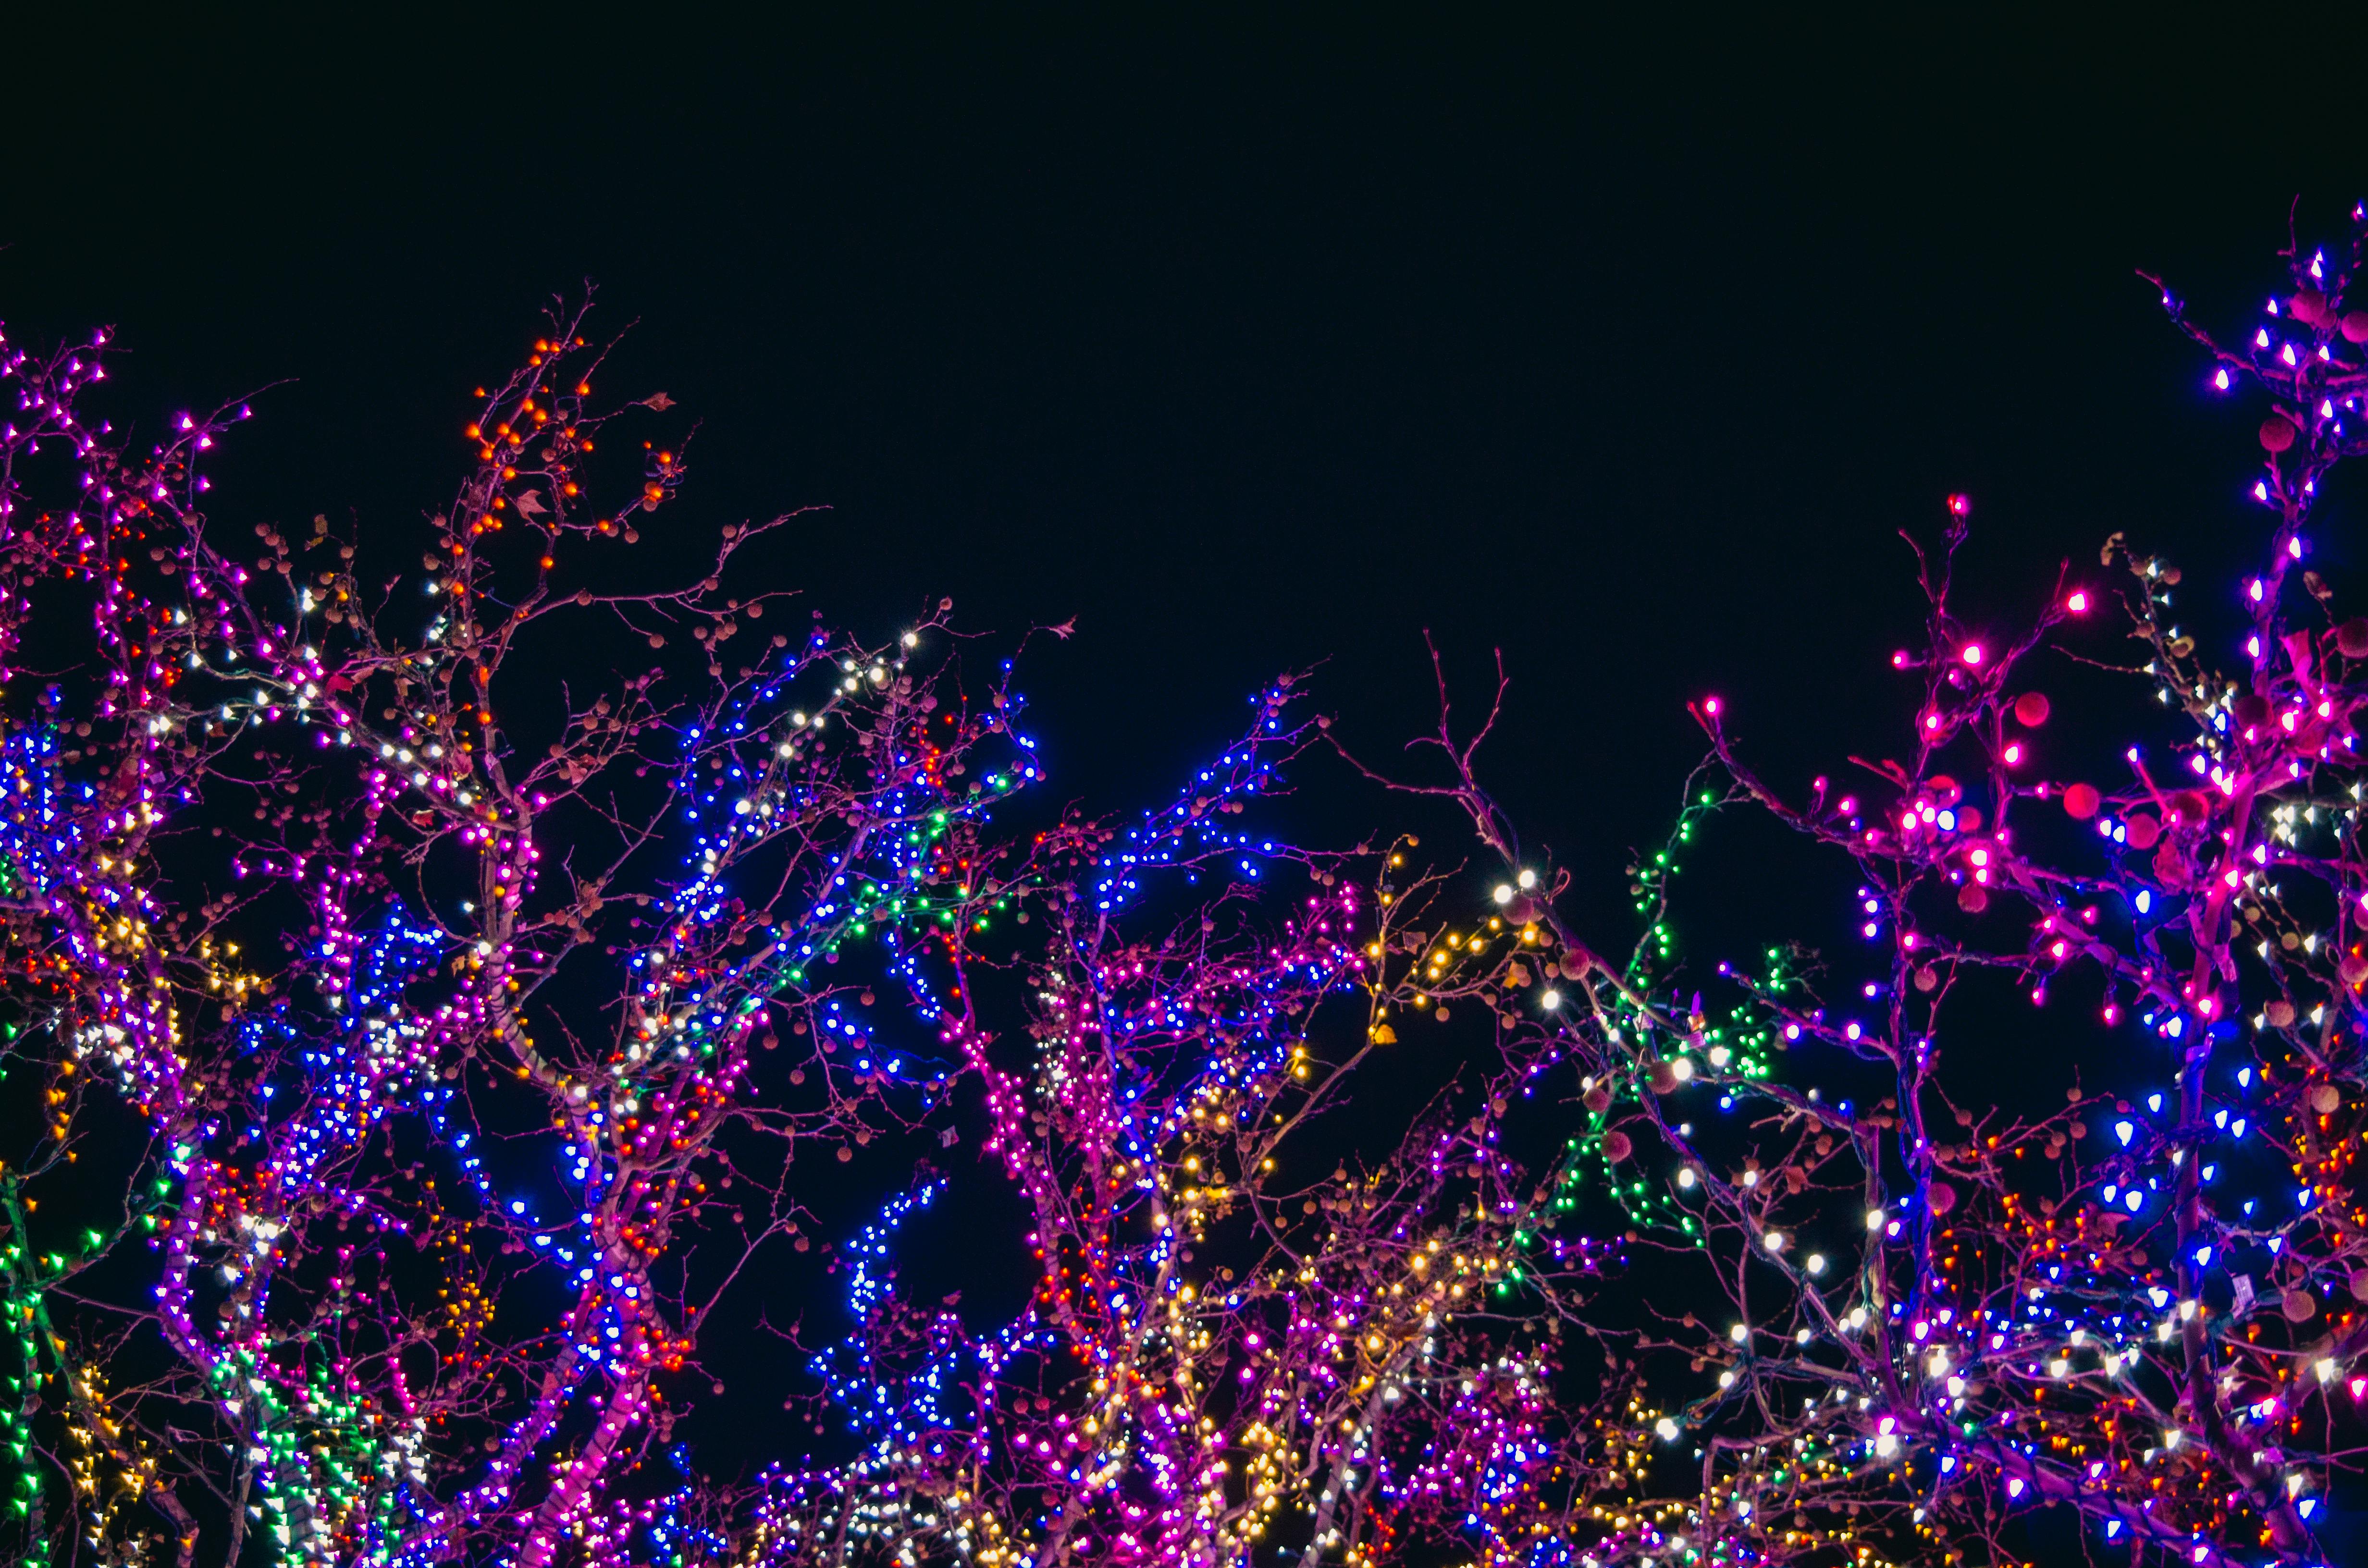 Đón giáng sinh đang đến gần bằng những ánh sáng rực rỡ của đêm Noel. Hãy chiêm ngưỡng hình ảnh ánh sáng Giáng sinh phủ nền để cảm nhận được không khí ngập tràn sự yêu thương và hạnh phúc mà mùa lễ hội mang lại.